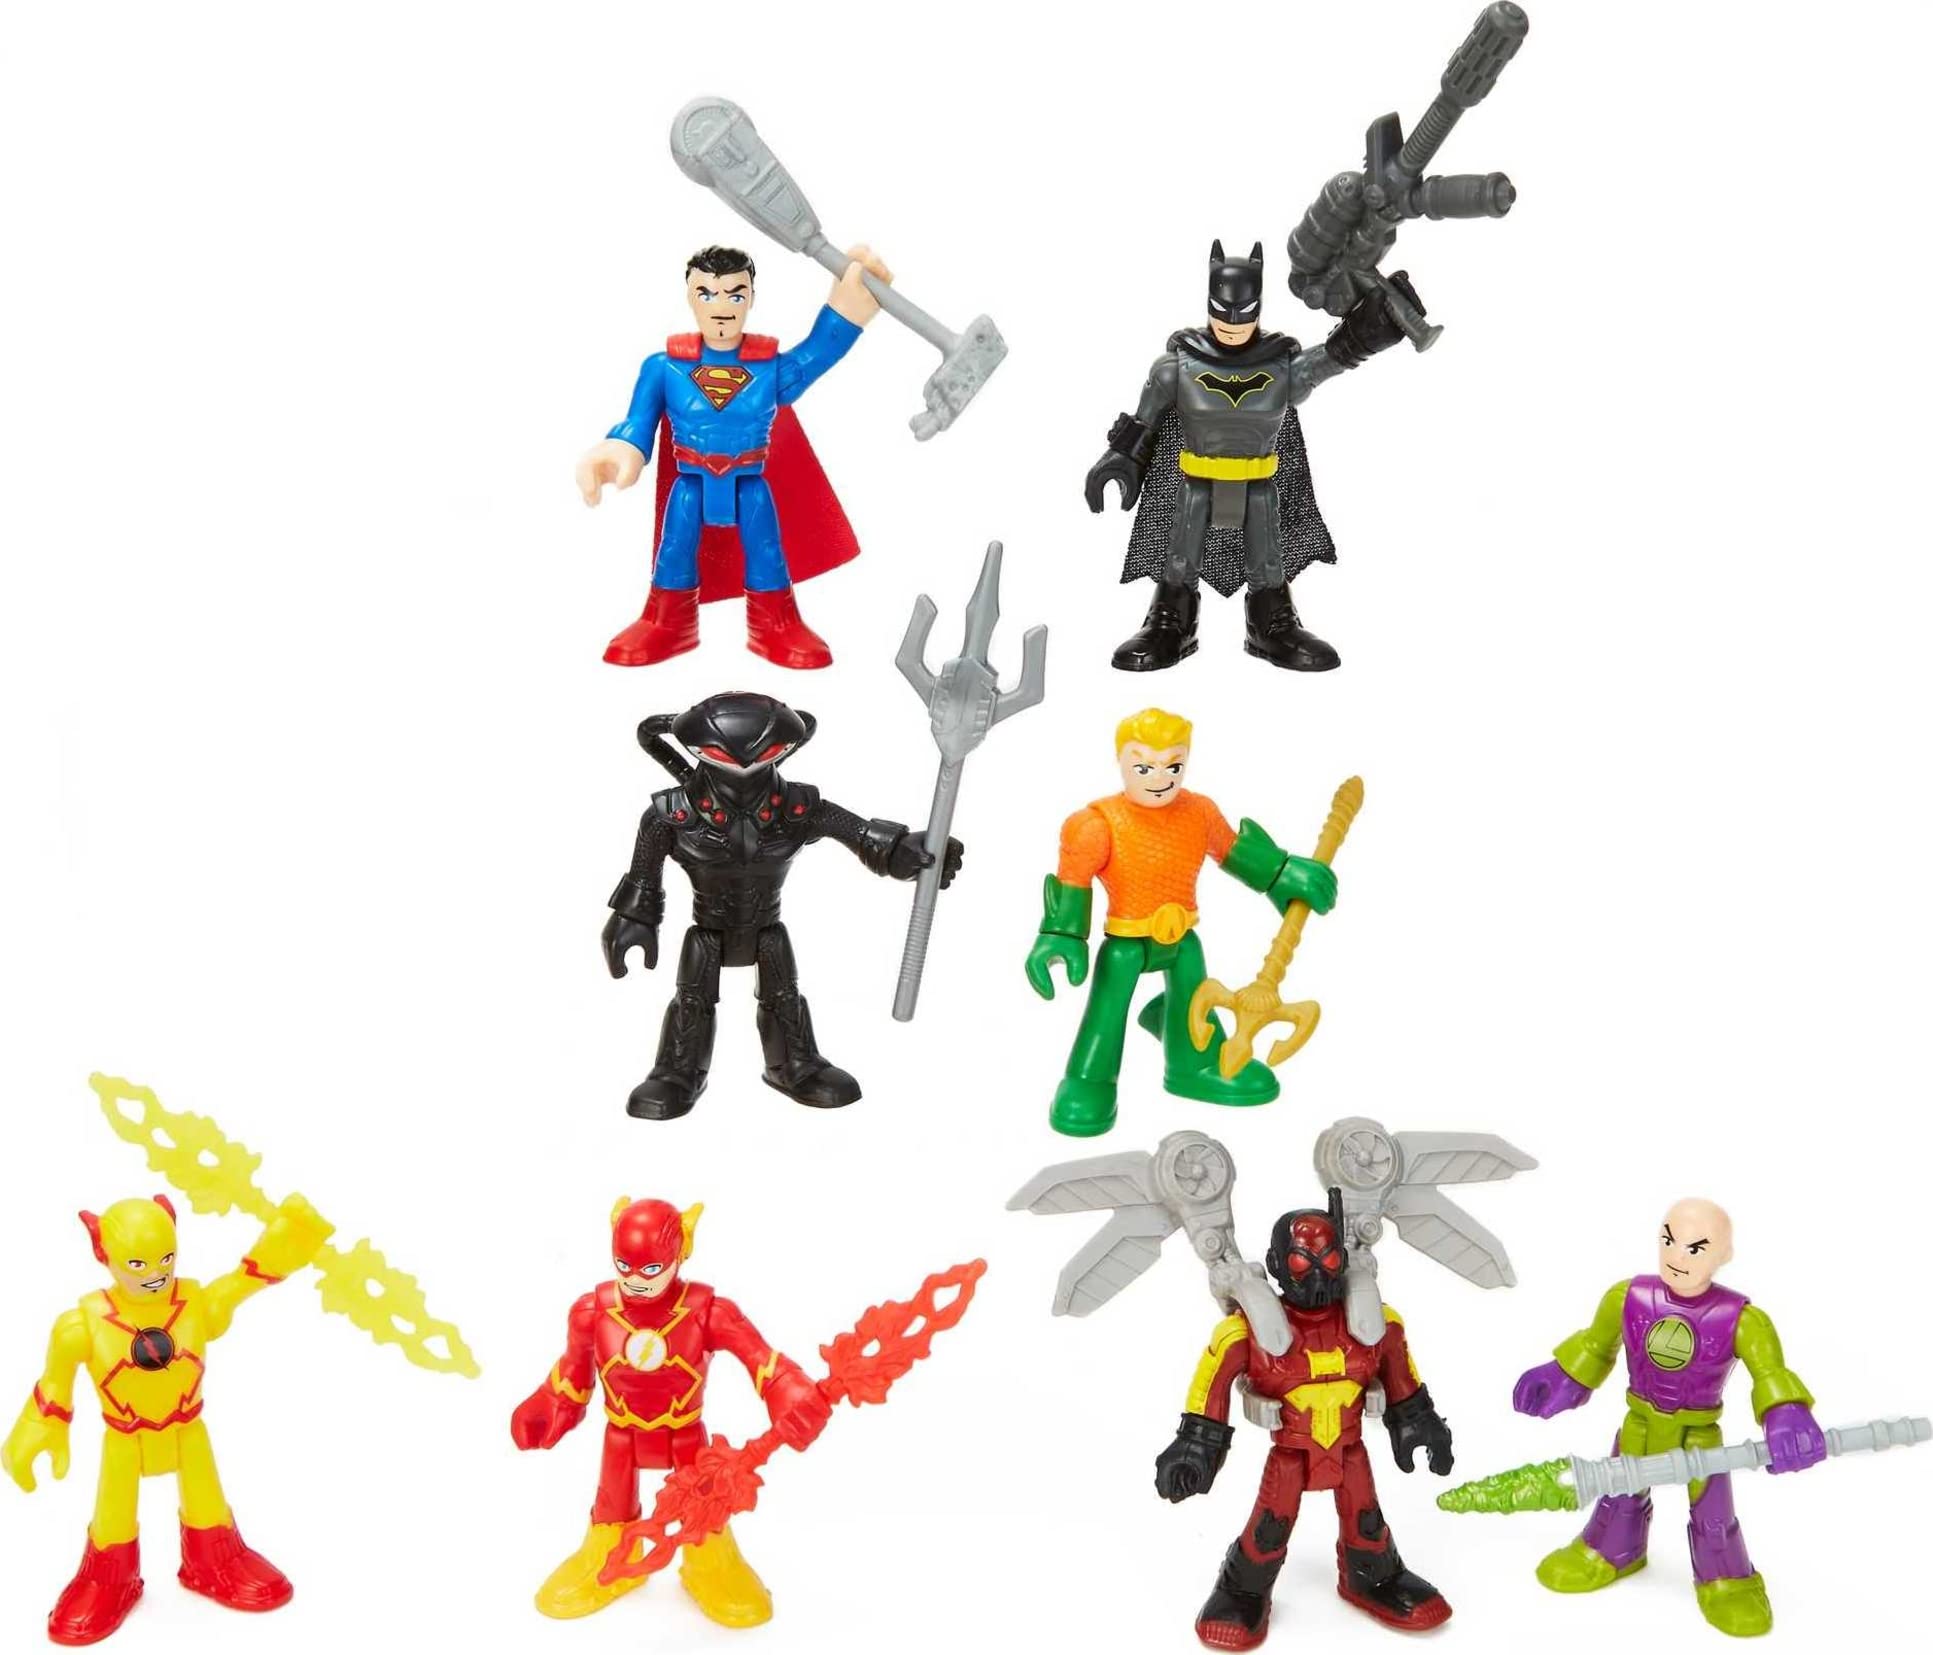 8-Piece Imaginext DC Super Friends Super-Hero Showdown Figure Set w/ Batman, Superman, Aquaman, The Flash & Super-Villains $8 + Free Shipping w/ Prime or on $35+